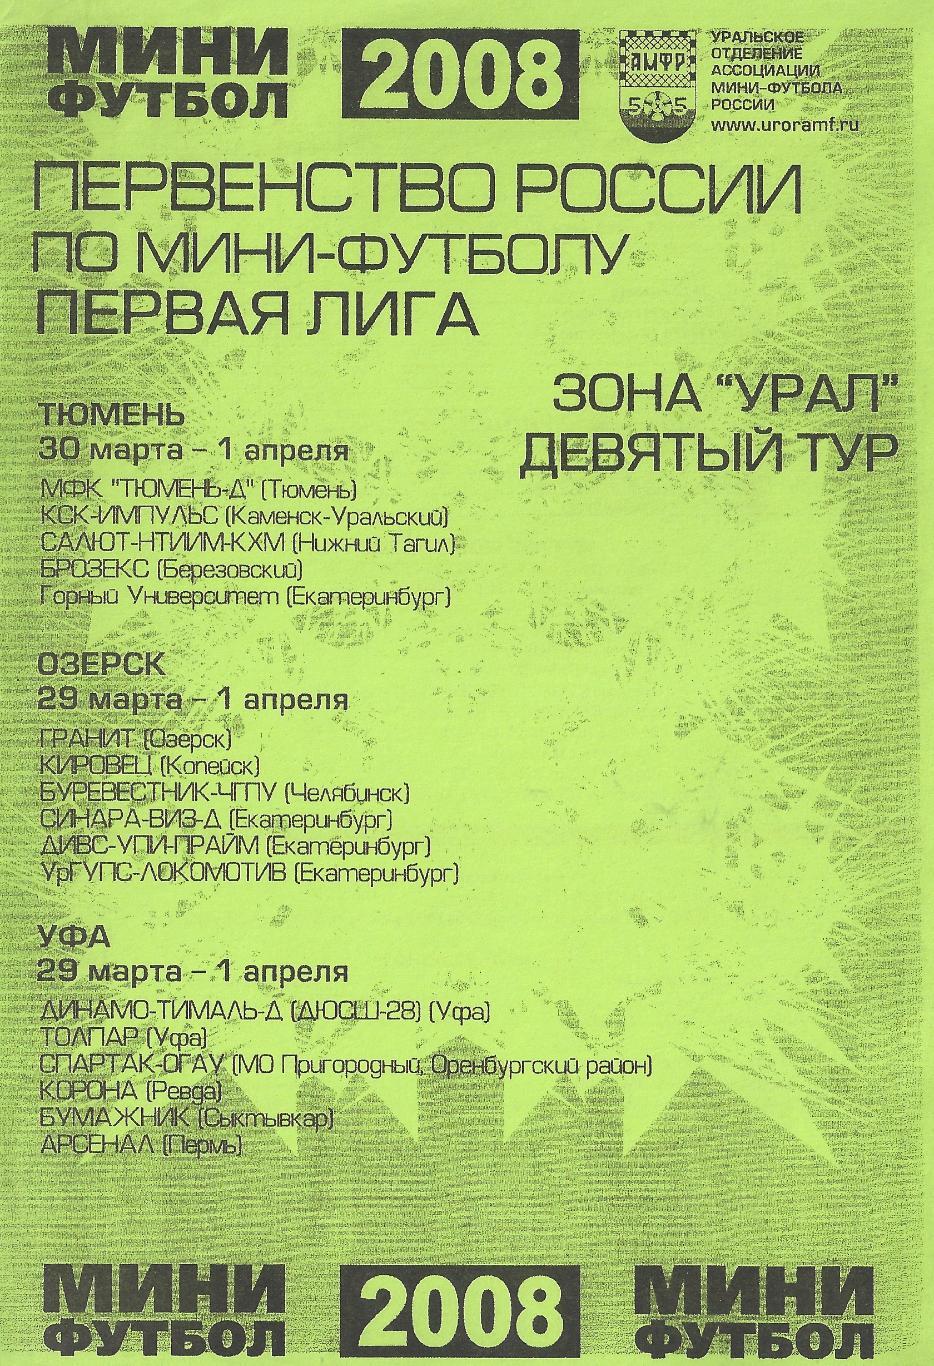 2008 - Первая лига - 9 тур